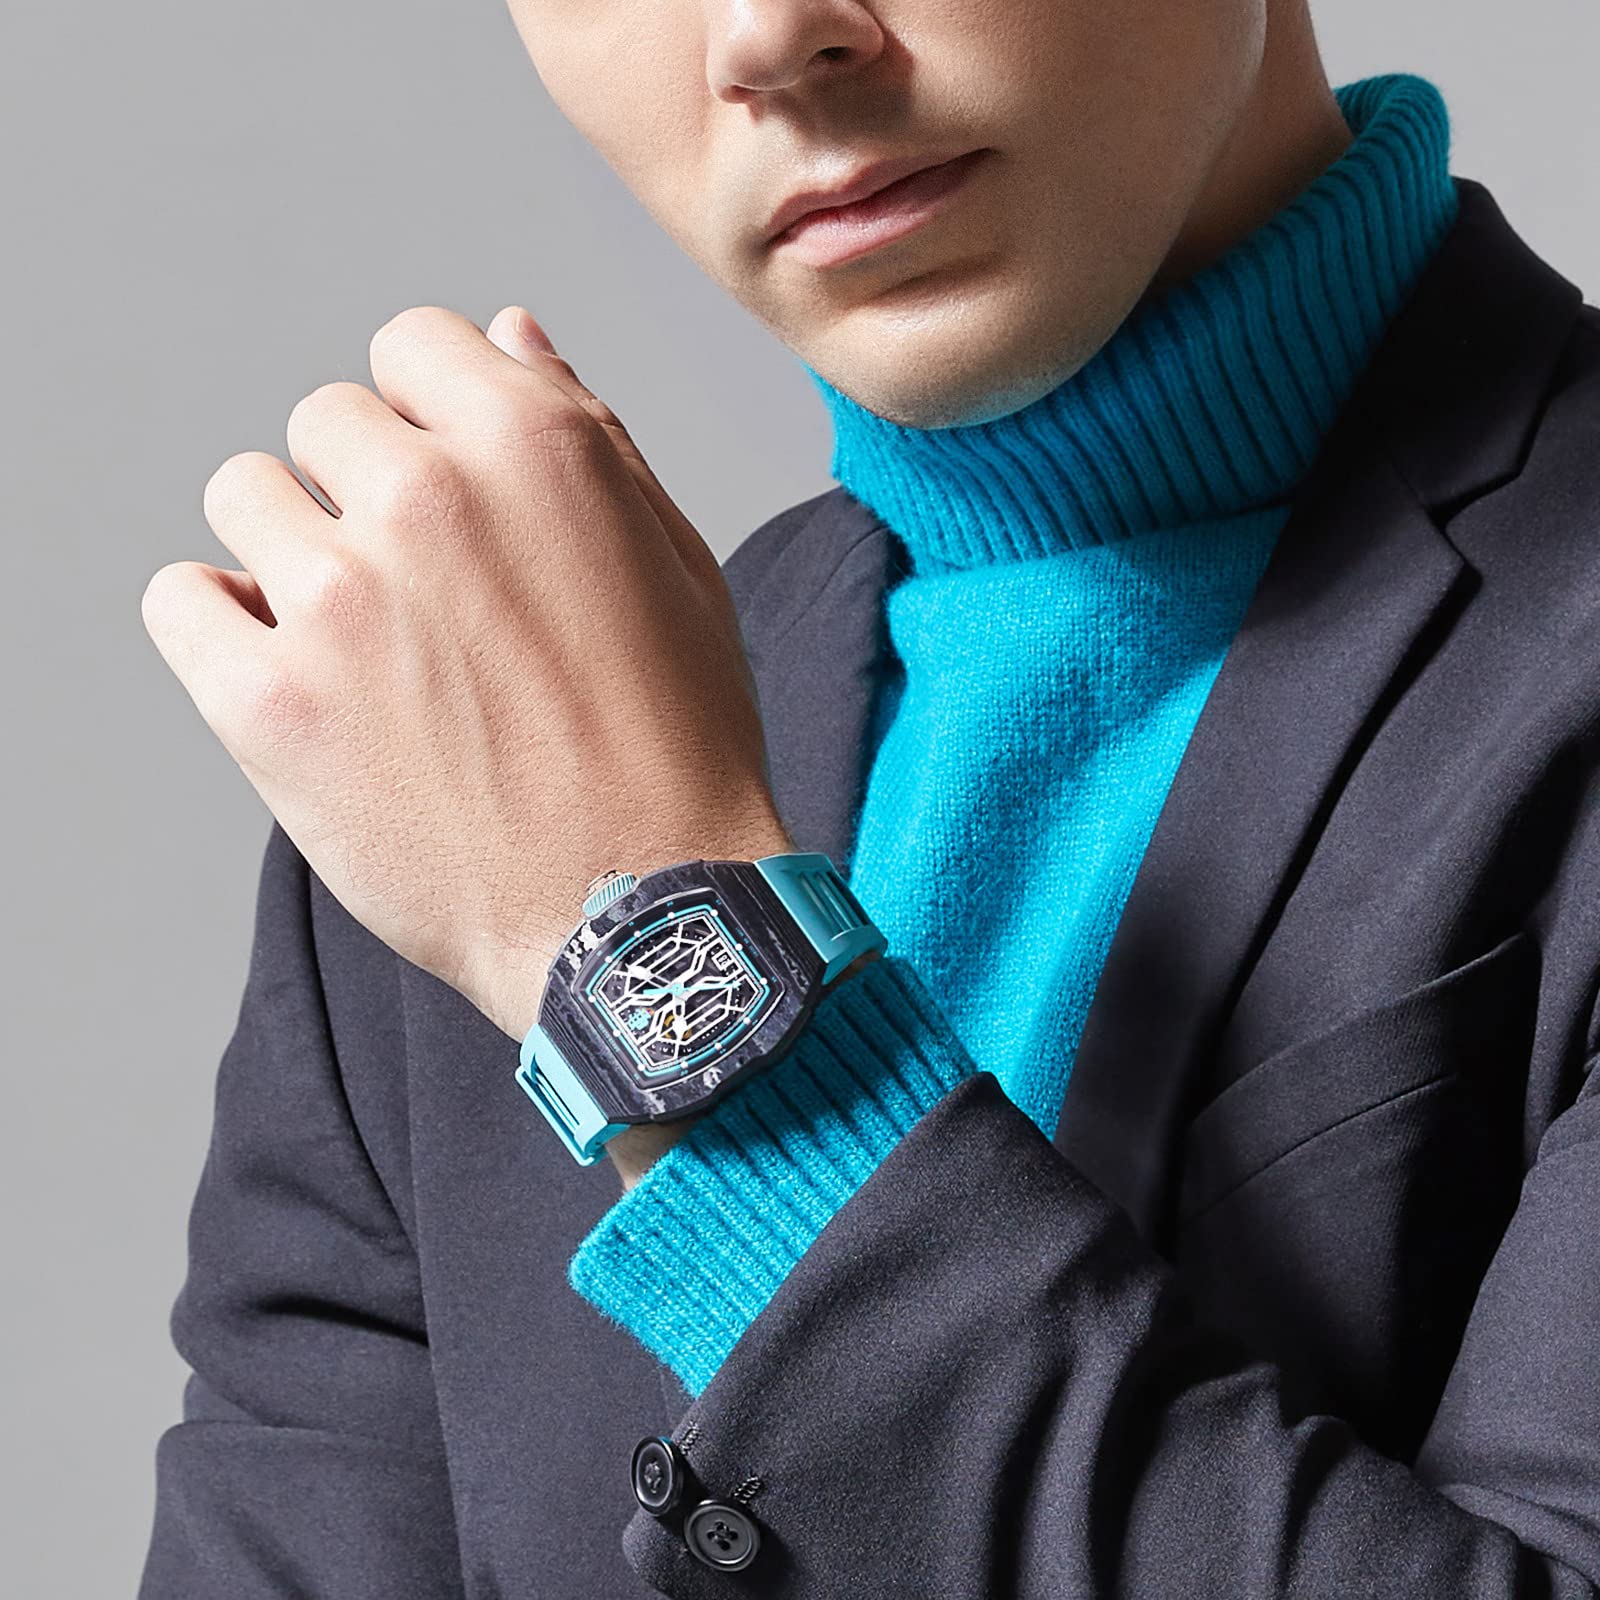 DAVIS ELVIN Global Popular Men's Wristwatch Birthday Gift Surprise for Men Tonneau Design Wrist Watch Swiss Automatic Movement Mechanical Watch Carbon Fiber Gentleman Watch-DR05-1